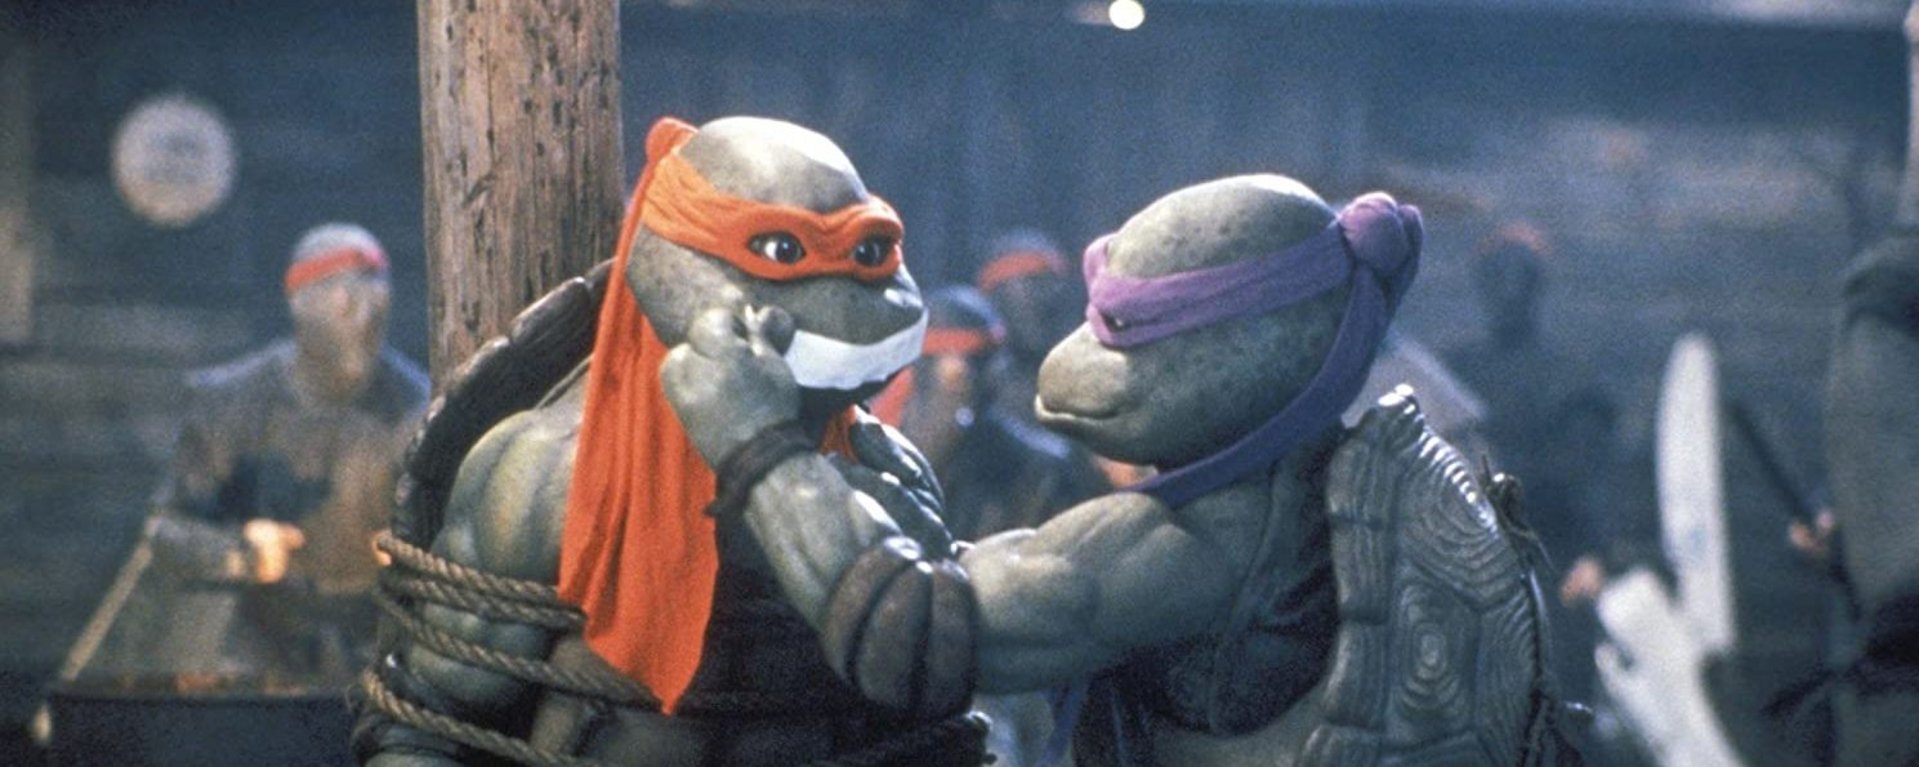 Teenage Mutant Ninja Turtles ll - The Secret Of The Ooze | BBFC